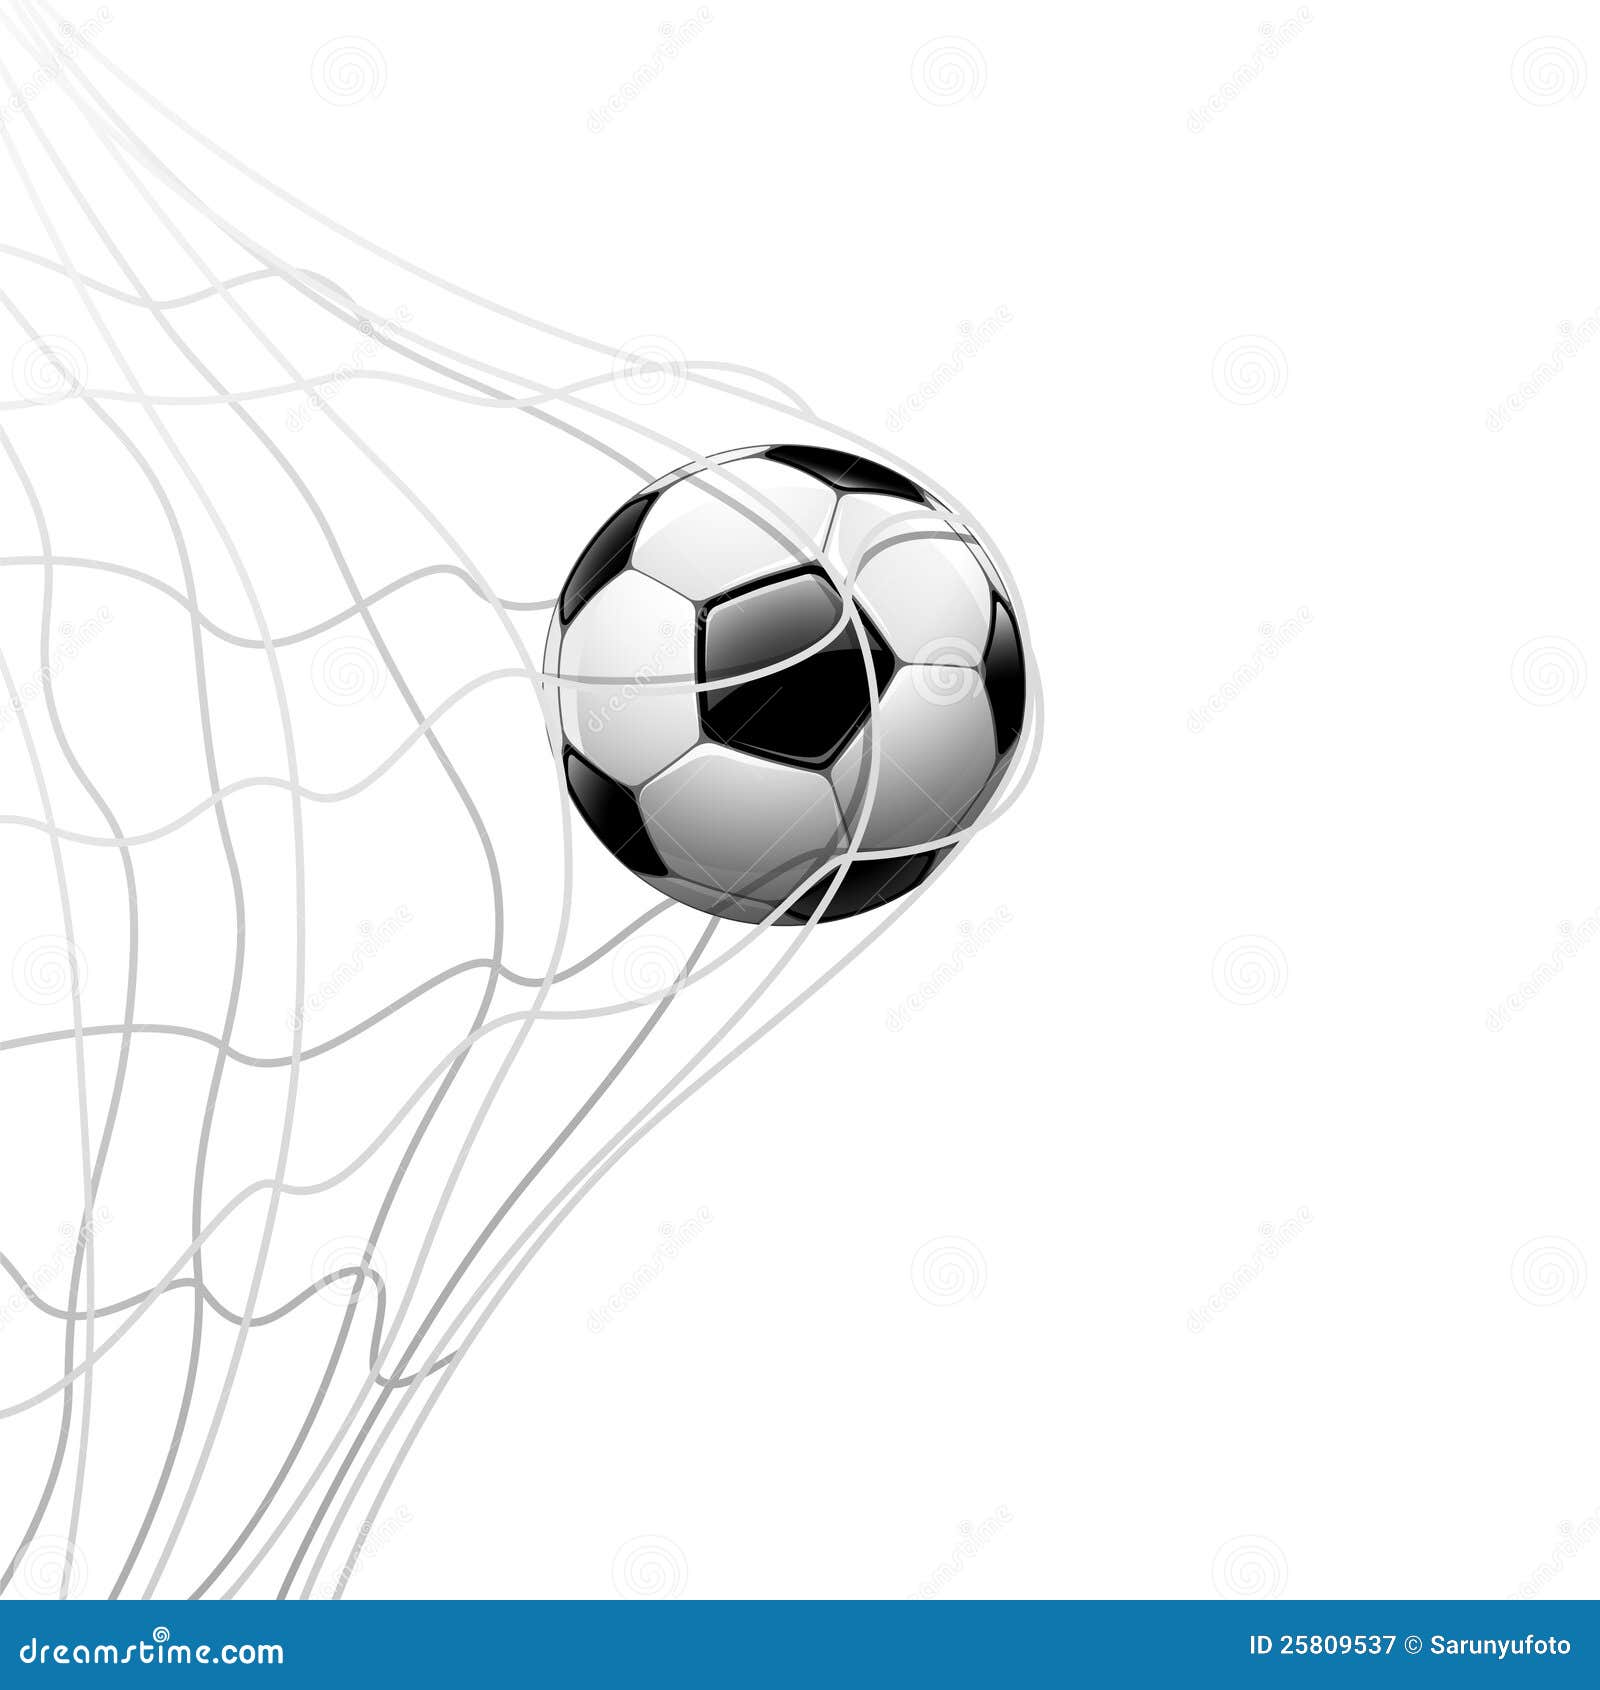 Soccer Ball In Net Background Stock Illustration Illustration Of Background Goal